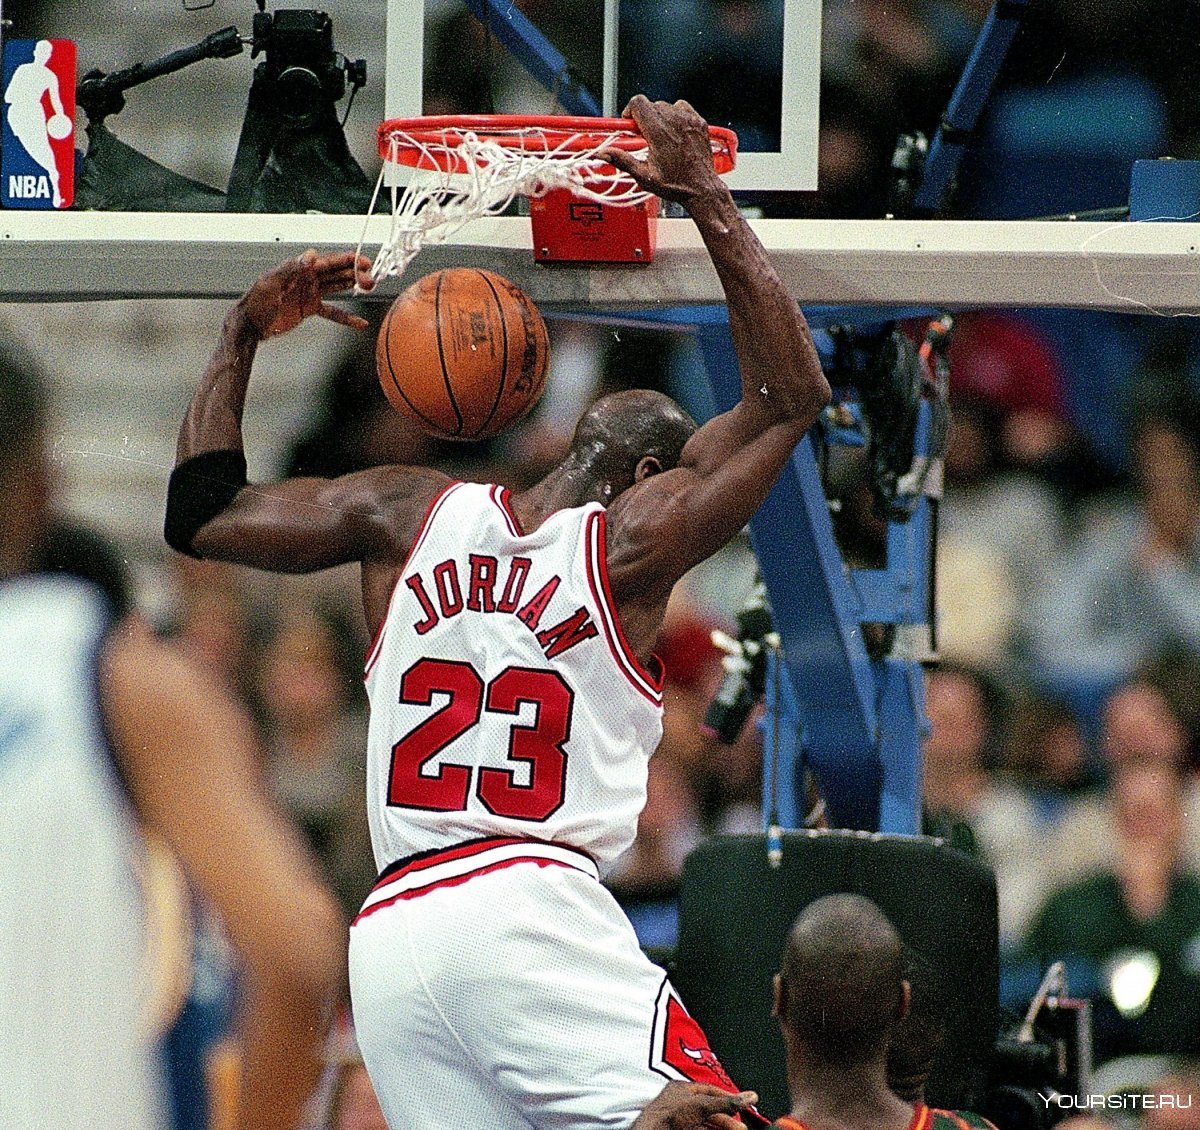 Jordan баскетболист данк